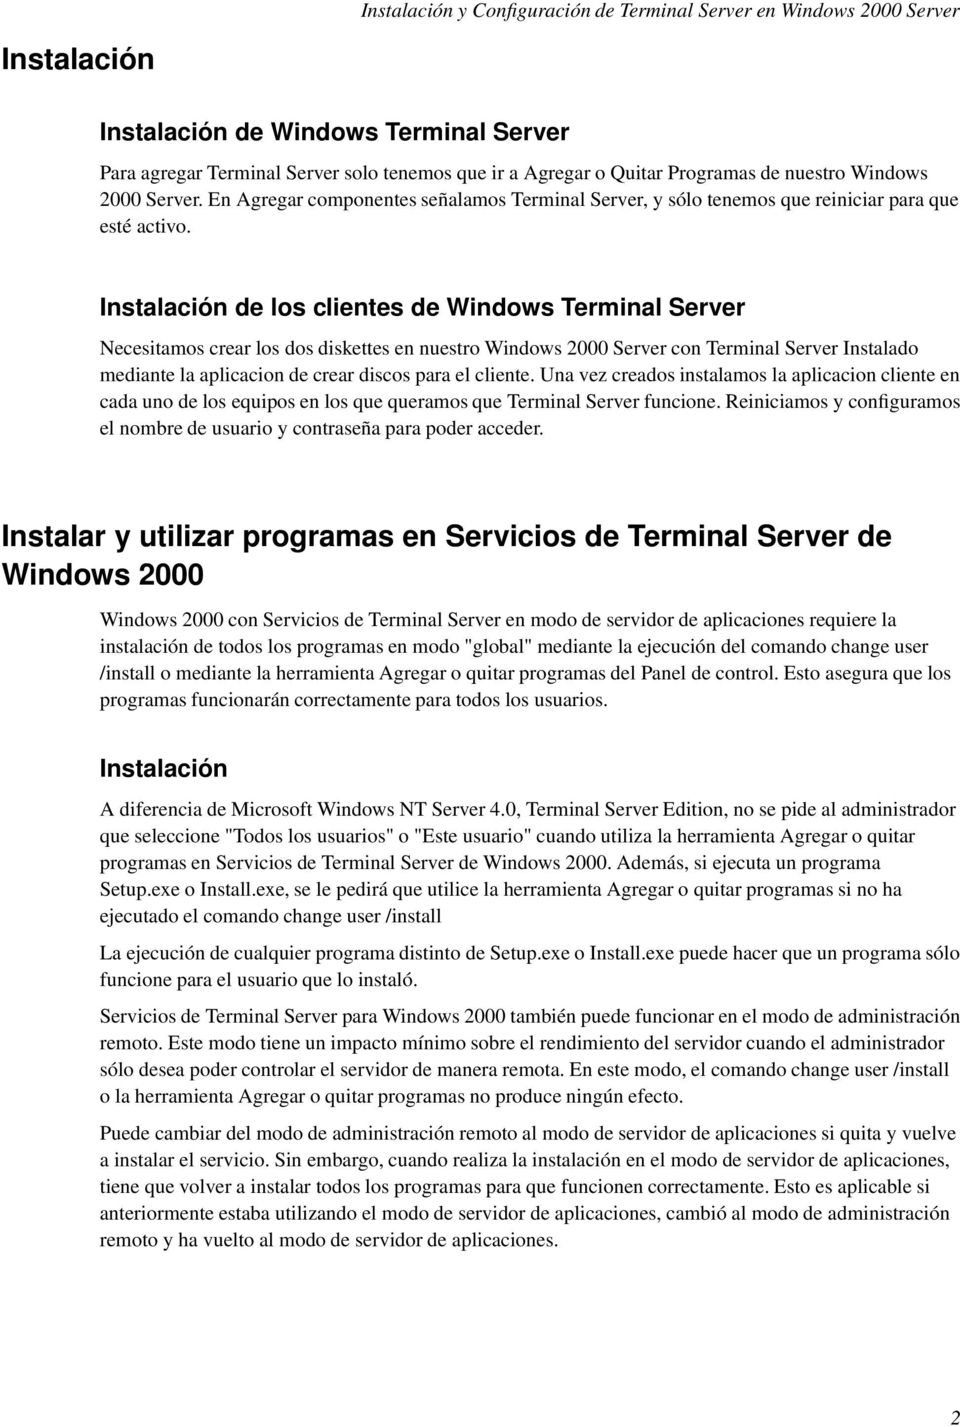 Instalación de los clientes de Windows Terminal Server Necesitamos crear los dos diskettes en nuestro Windows 2000 Server con Terminal Server Instalado mediante la aplicacion de crear discos para el